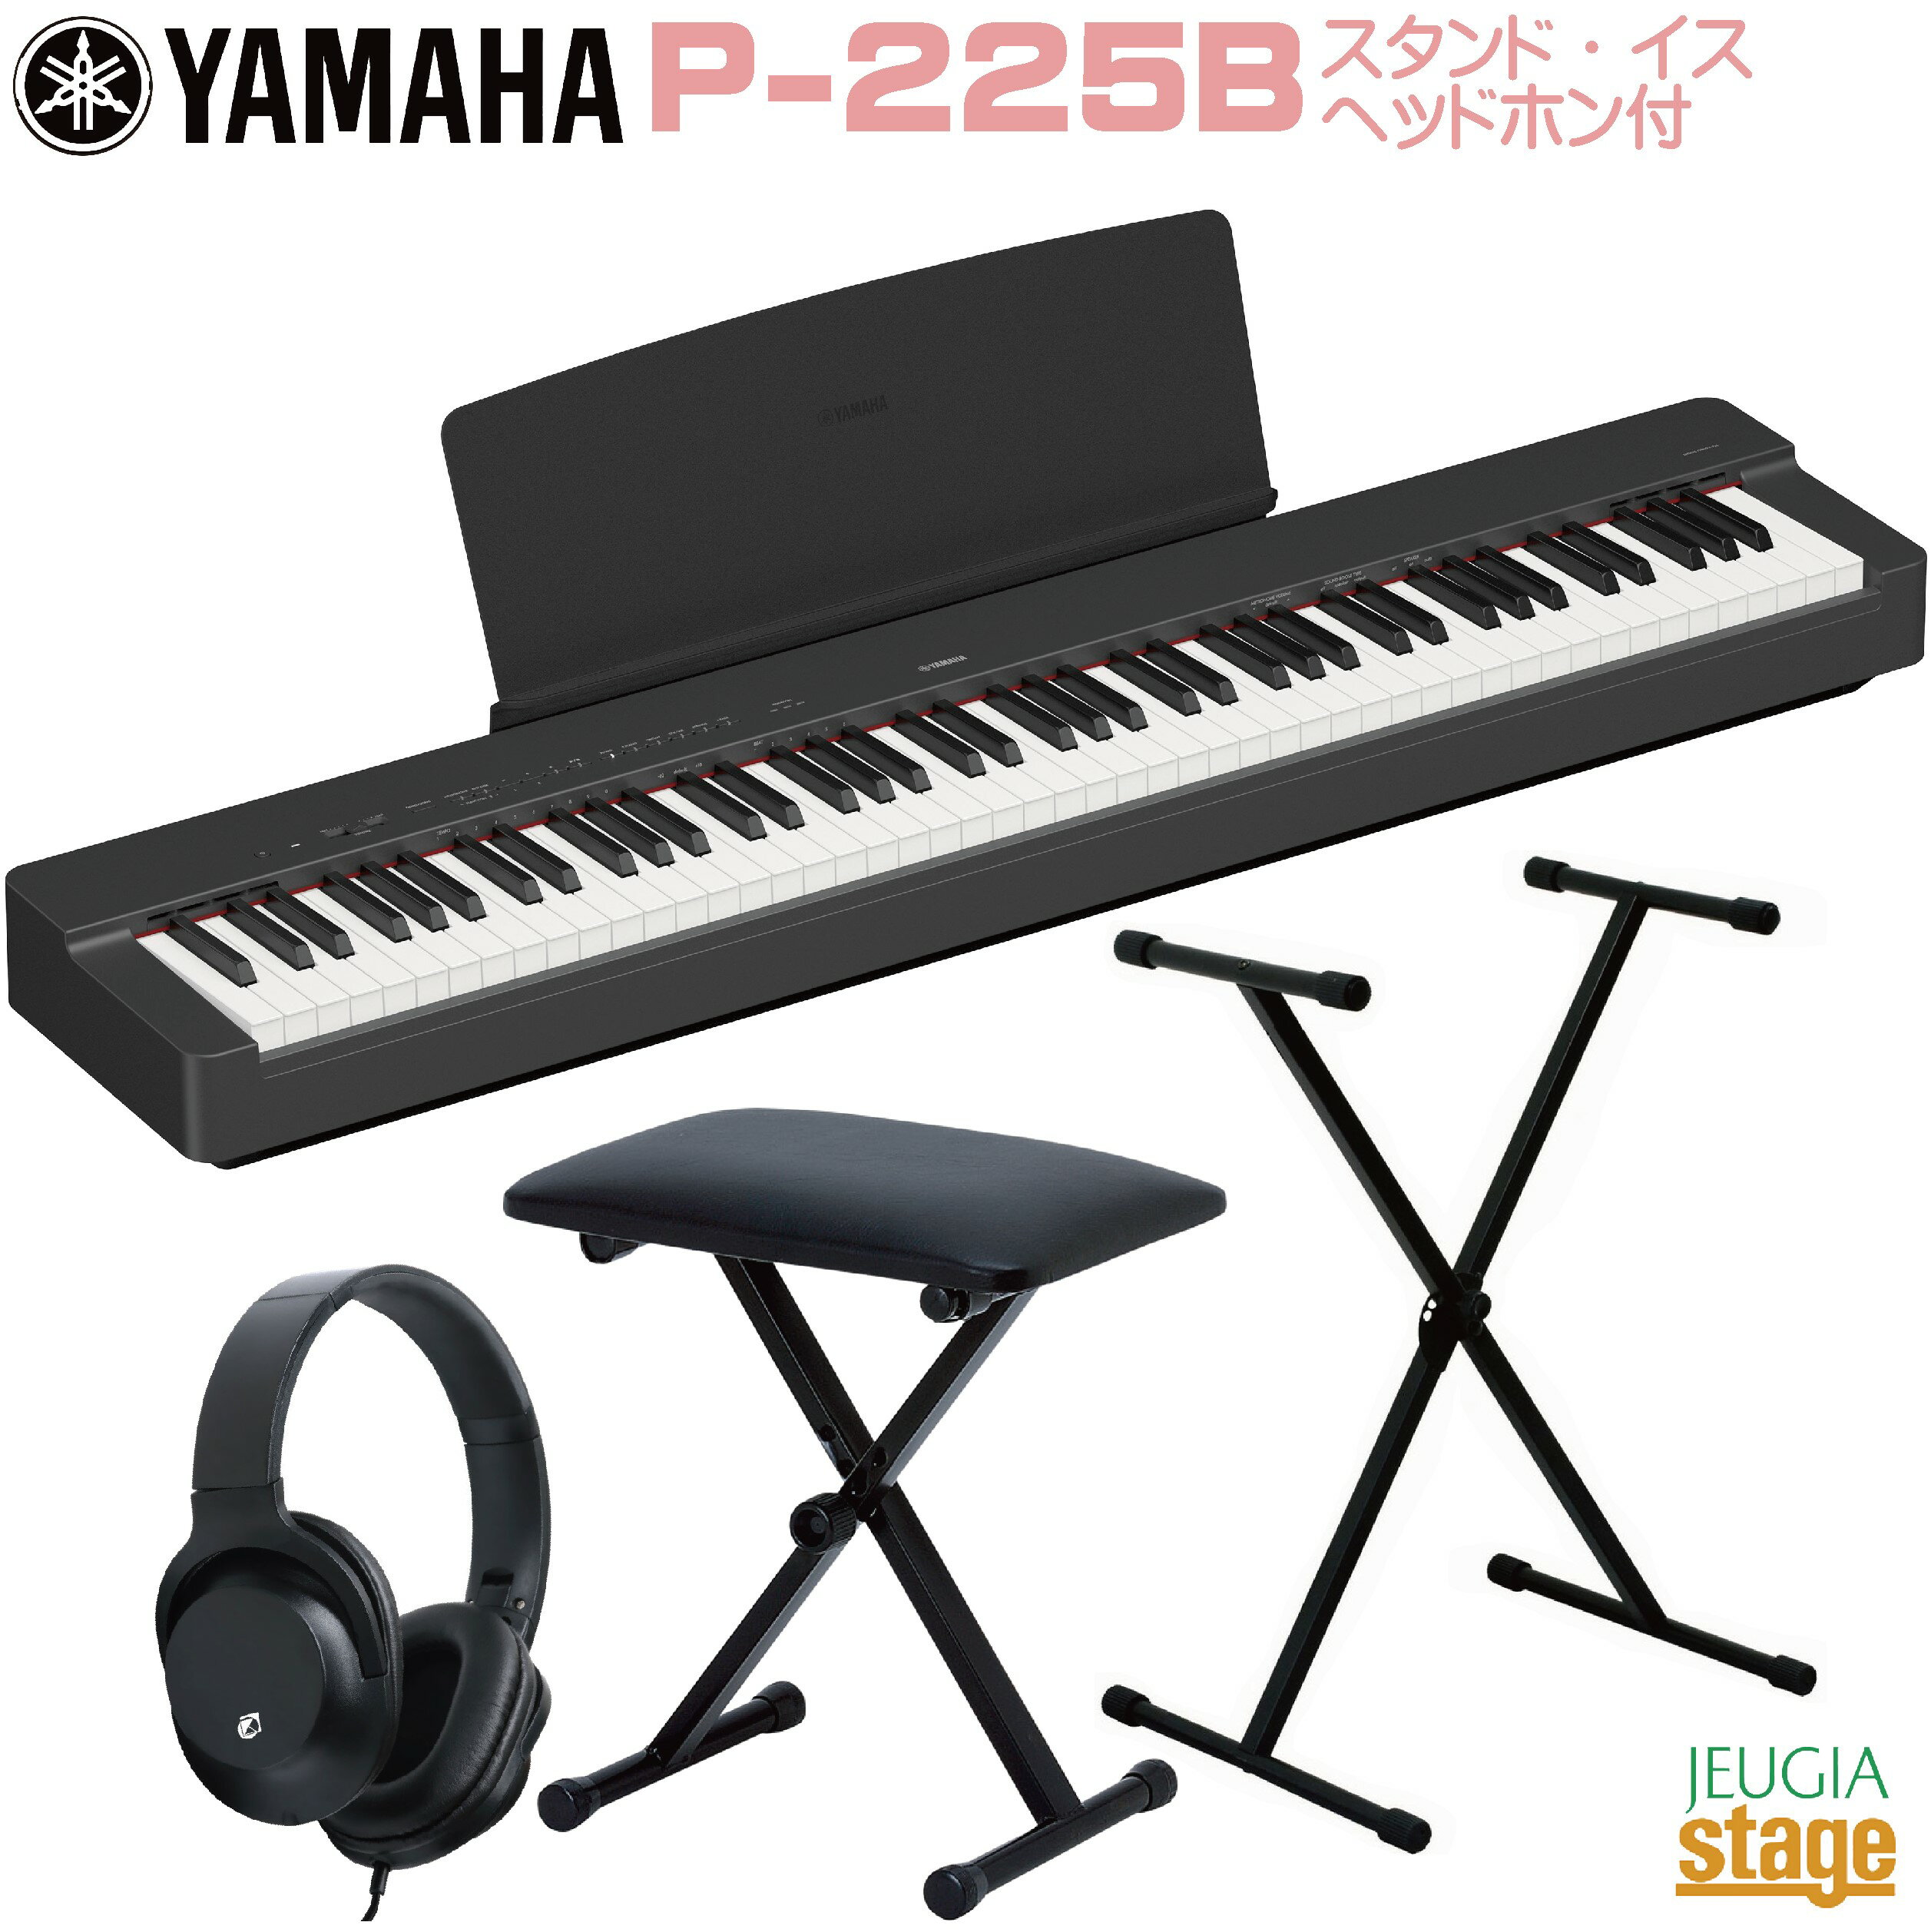 【期間限定特価】YAMAHA P-225B 【スタンド(黒) イス(黒) ヘッドホン(黒)付き】ヤマハ 電子ピアノ Pシリーズ 88鍵 ブラック 【Stage-Rakuten Piano SET】P-125後継機種 やまは おすすめ ぴあの 人気 黒